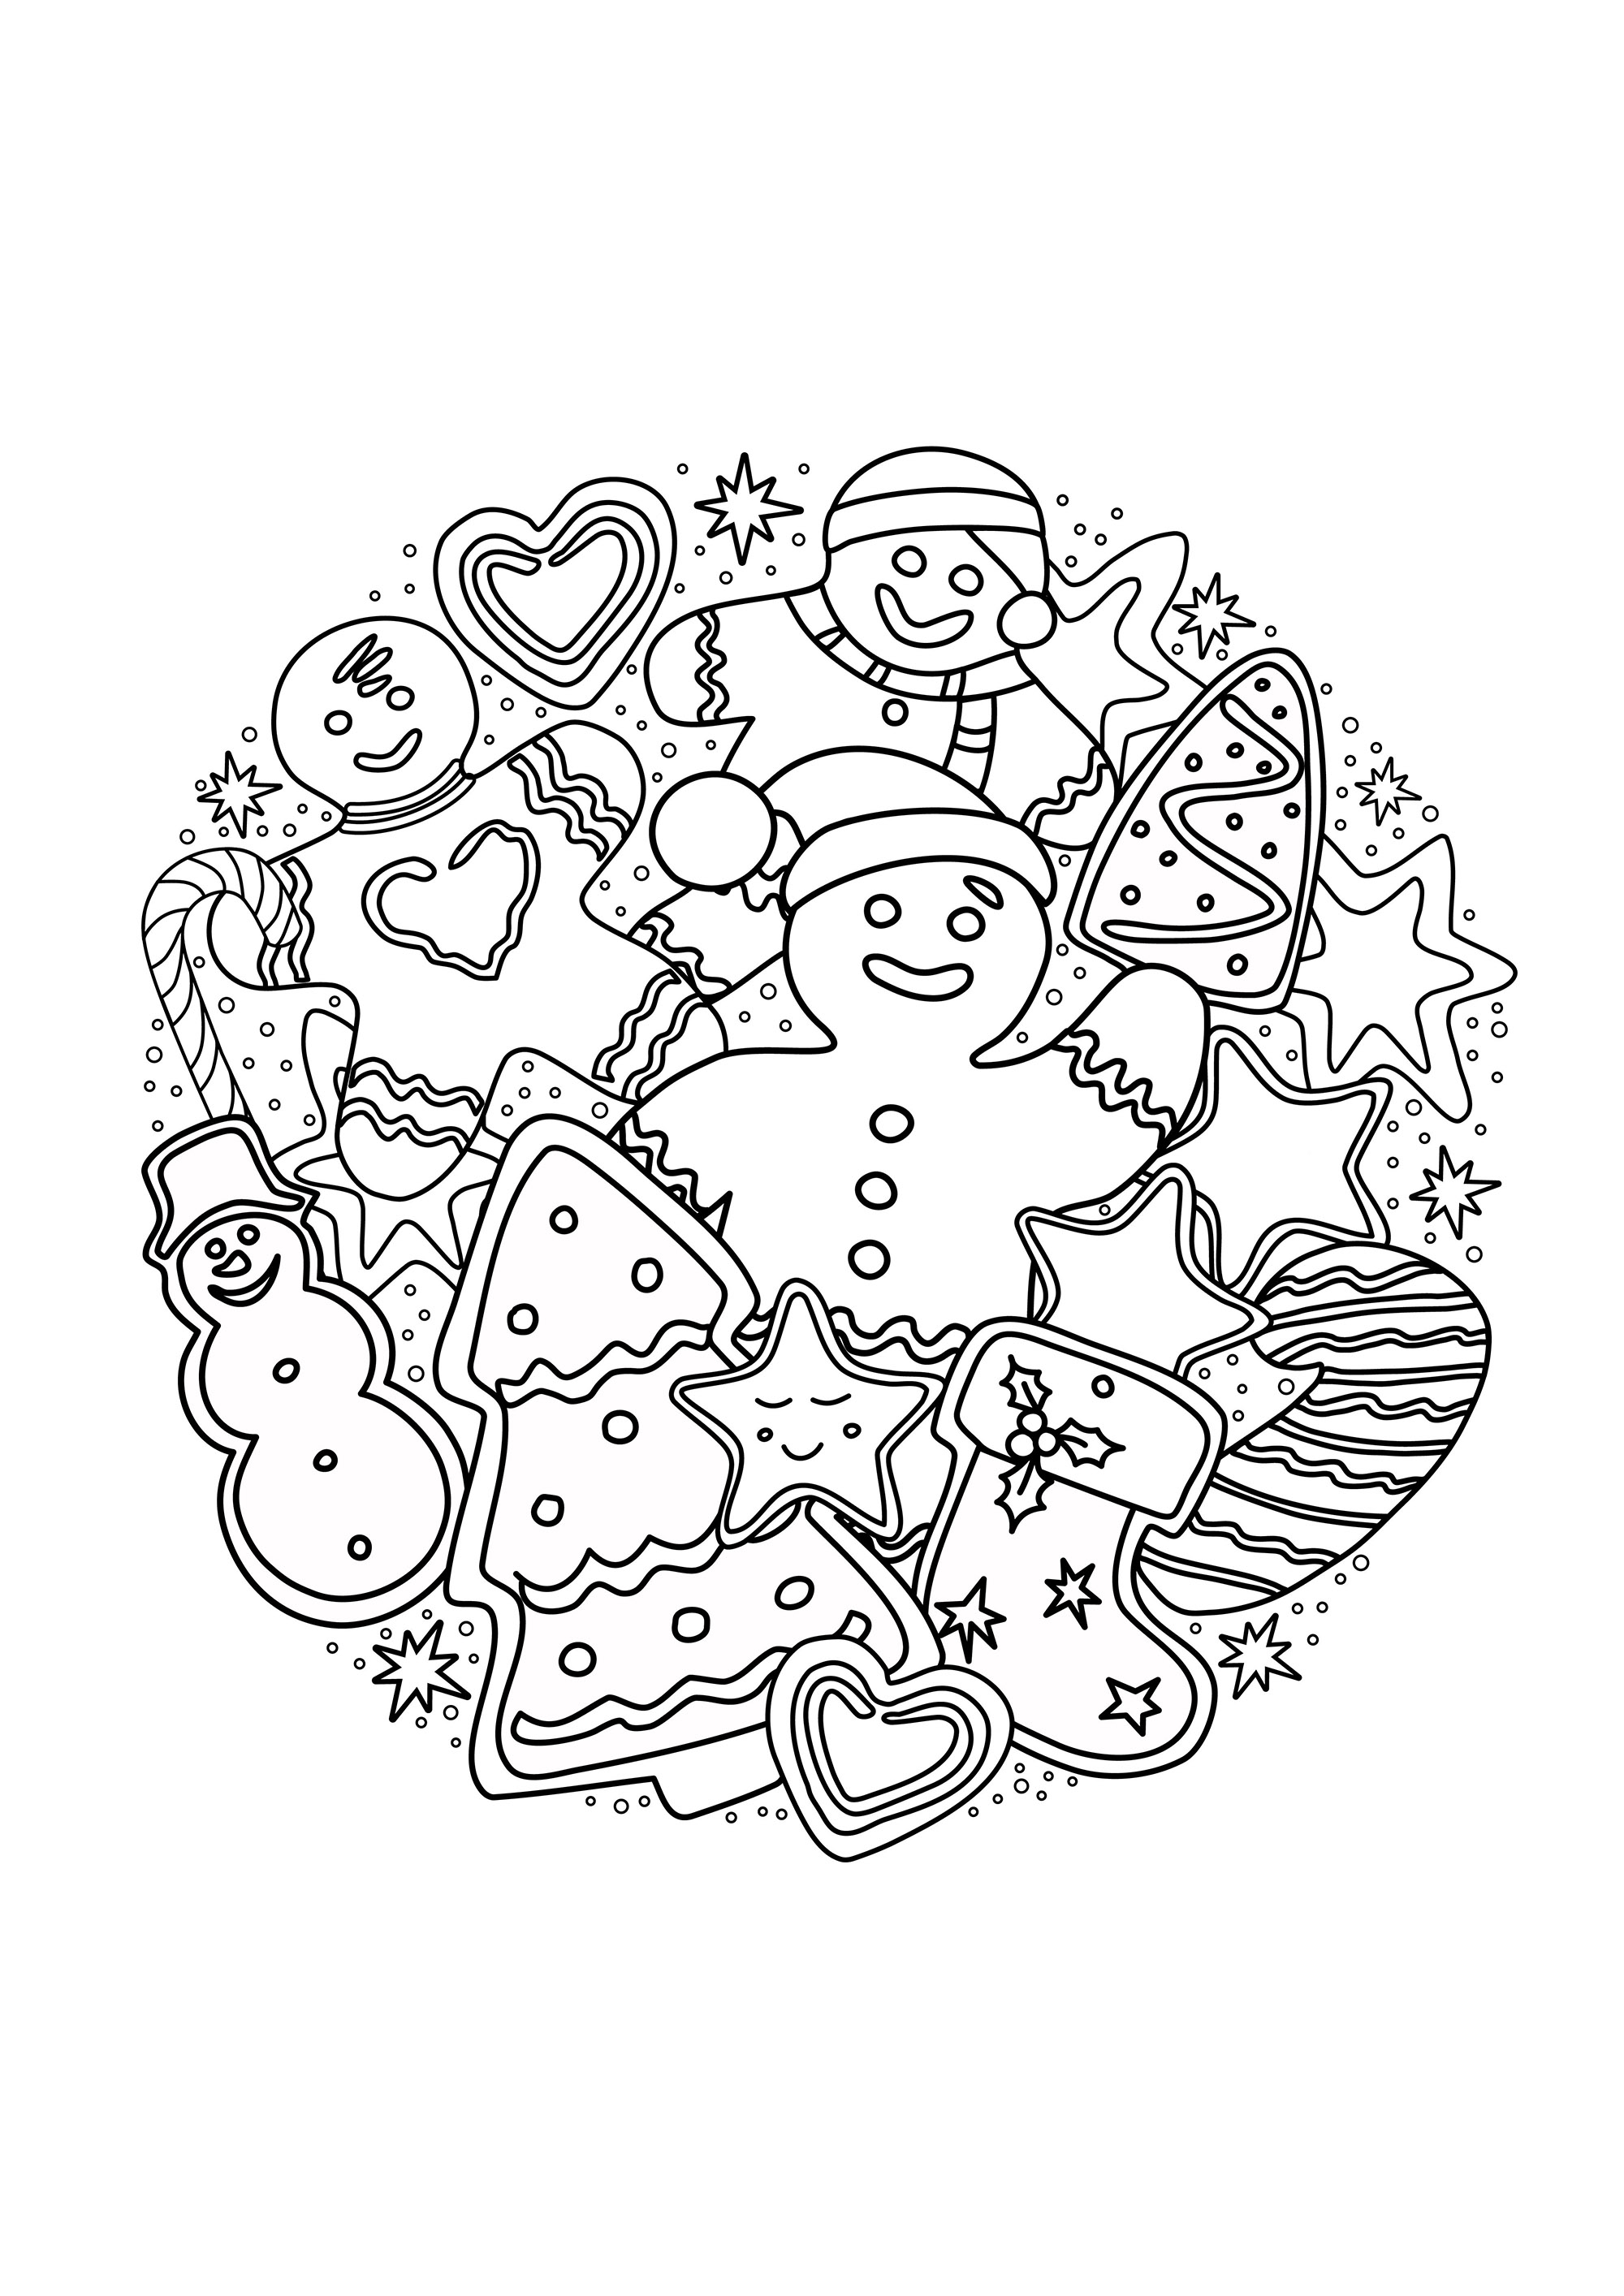 Hombres de jengibre y pasteles que representan árboles de Navidad, muñecos de nieve, golosinas y dulces .., Origen : 123rf   Artista : dovina